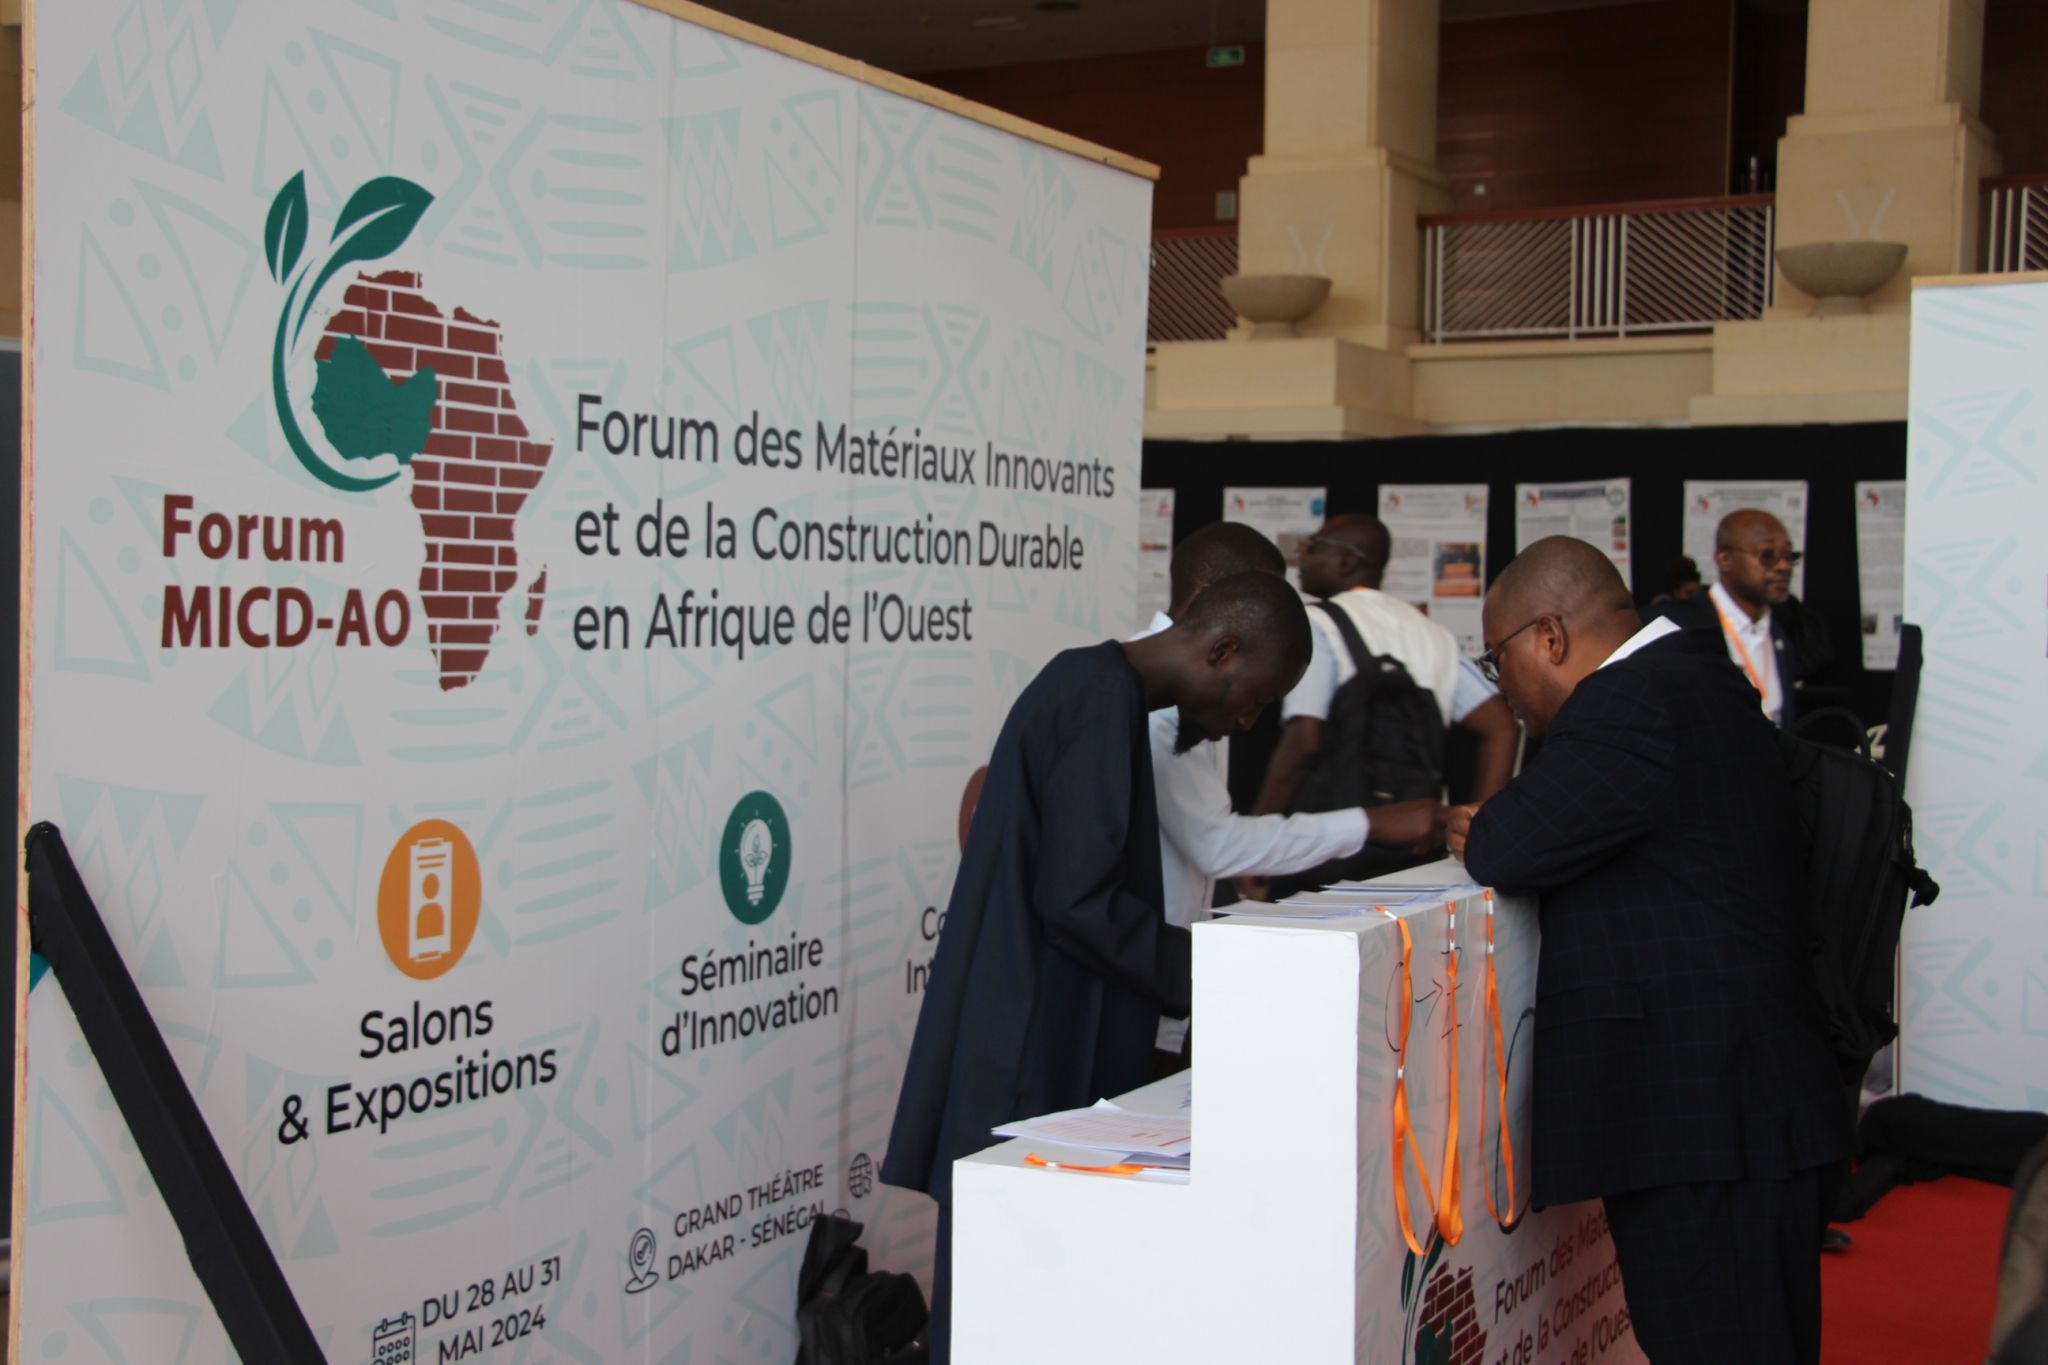 Forum MICD-AO : Matériaux Innovants et Construction Durable en Afrique de l’Ouest